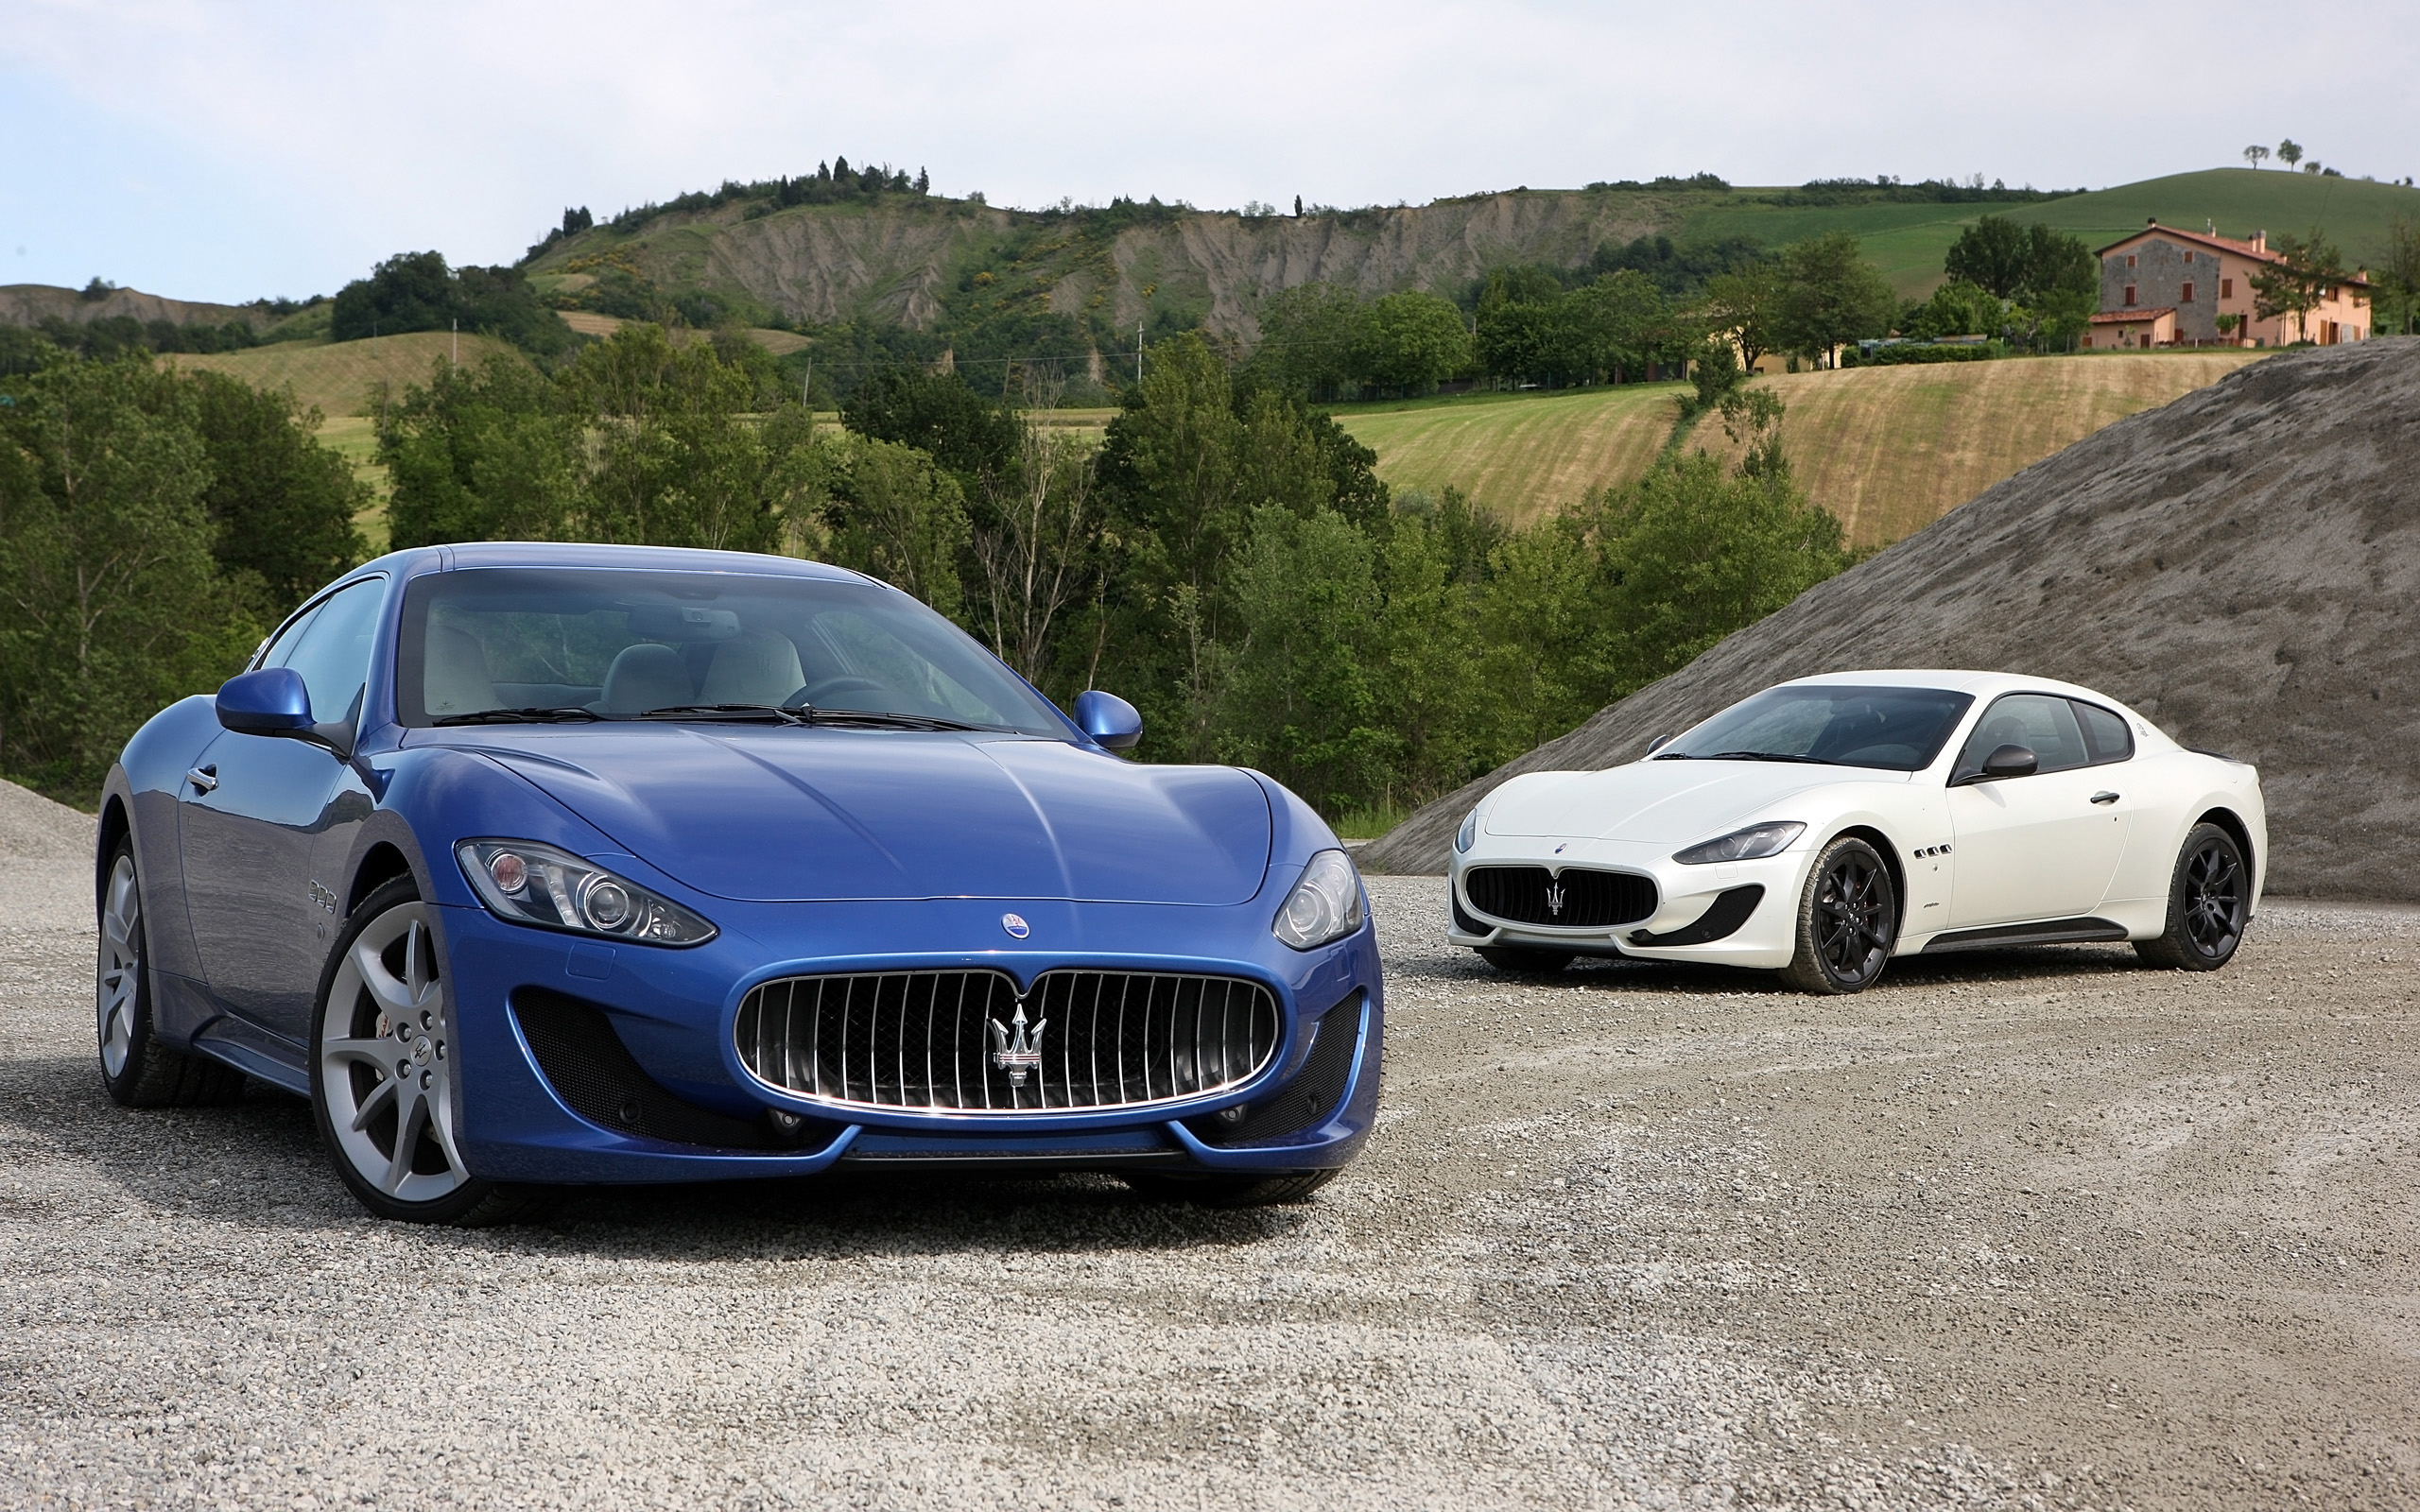 2014 Maserati GranTurismo Sport Duo Wallpaper | HD Car ...